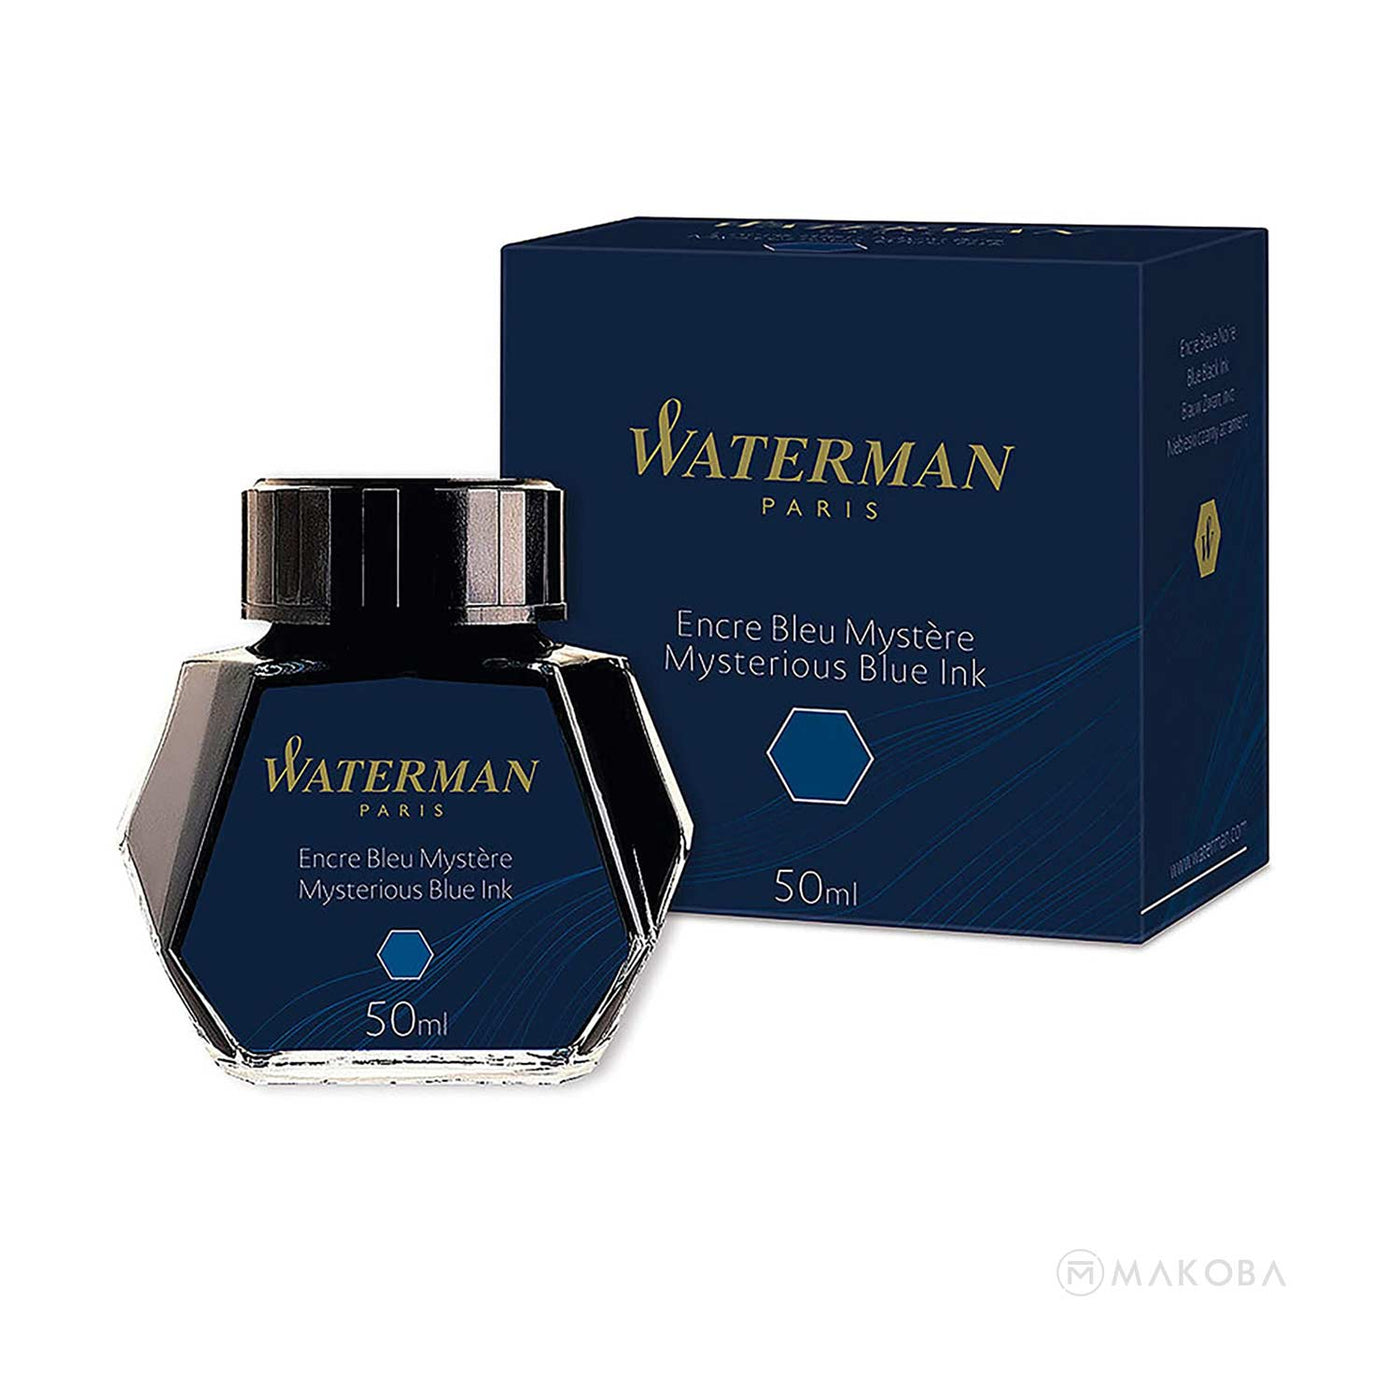 Waterman Mysterious Blue Ink Bottle - 50ml 2